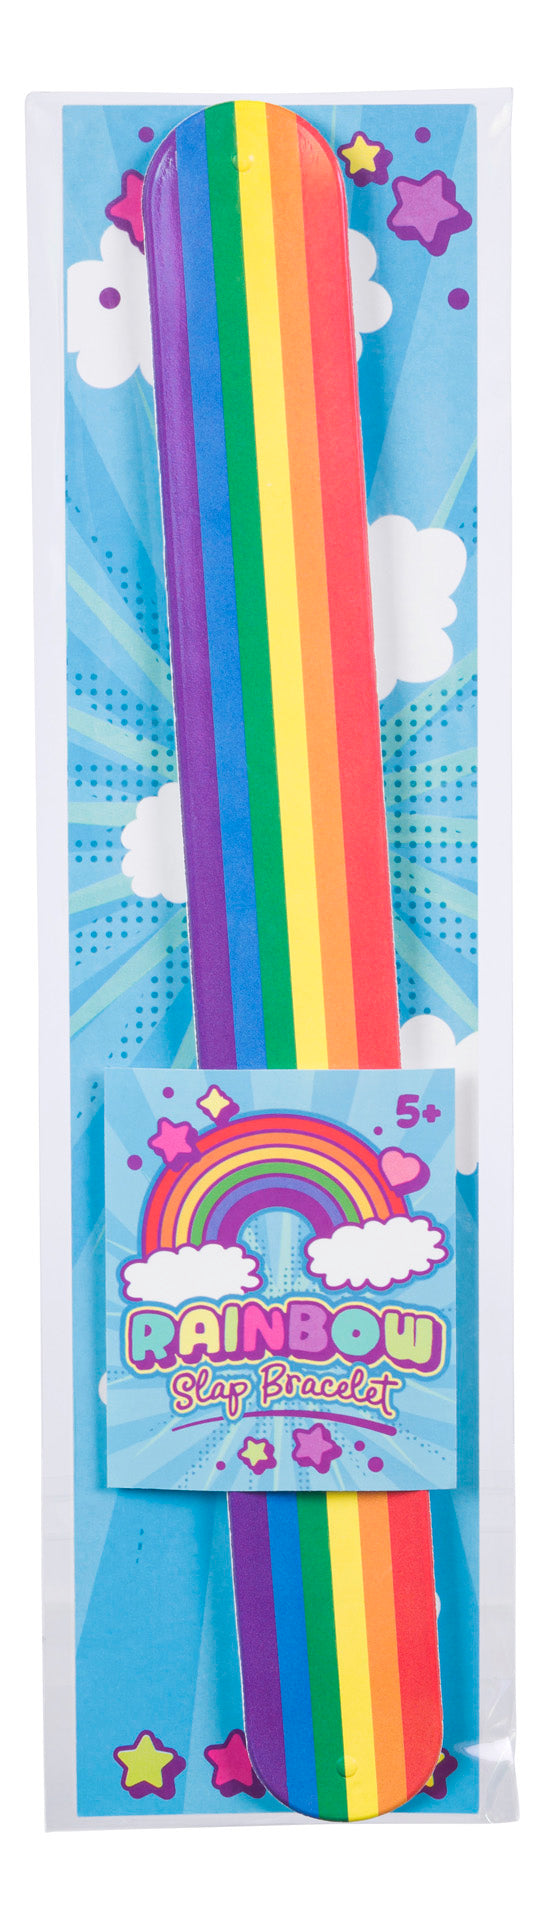 Toysmith Rainbow Snap Bracelet